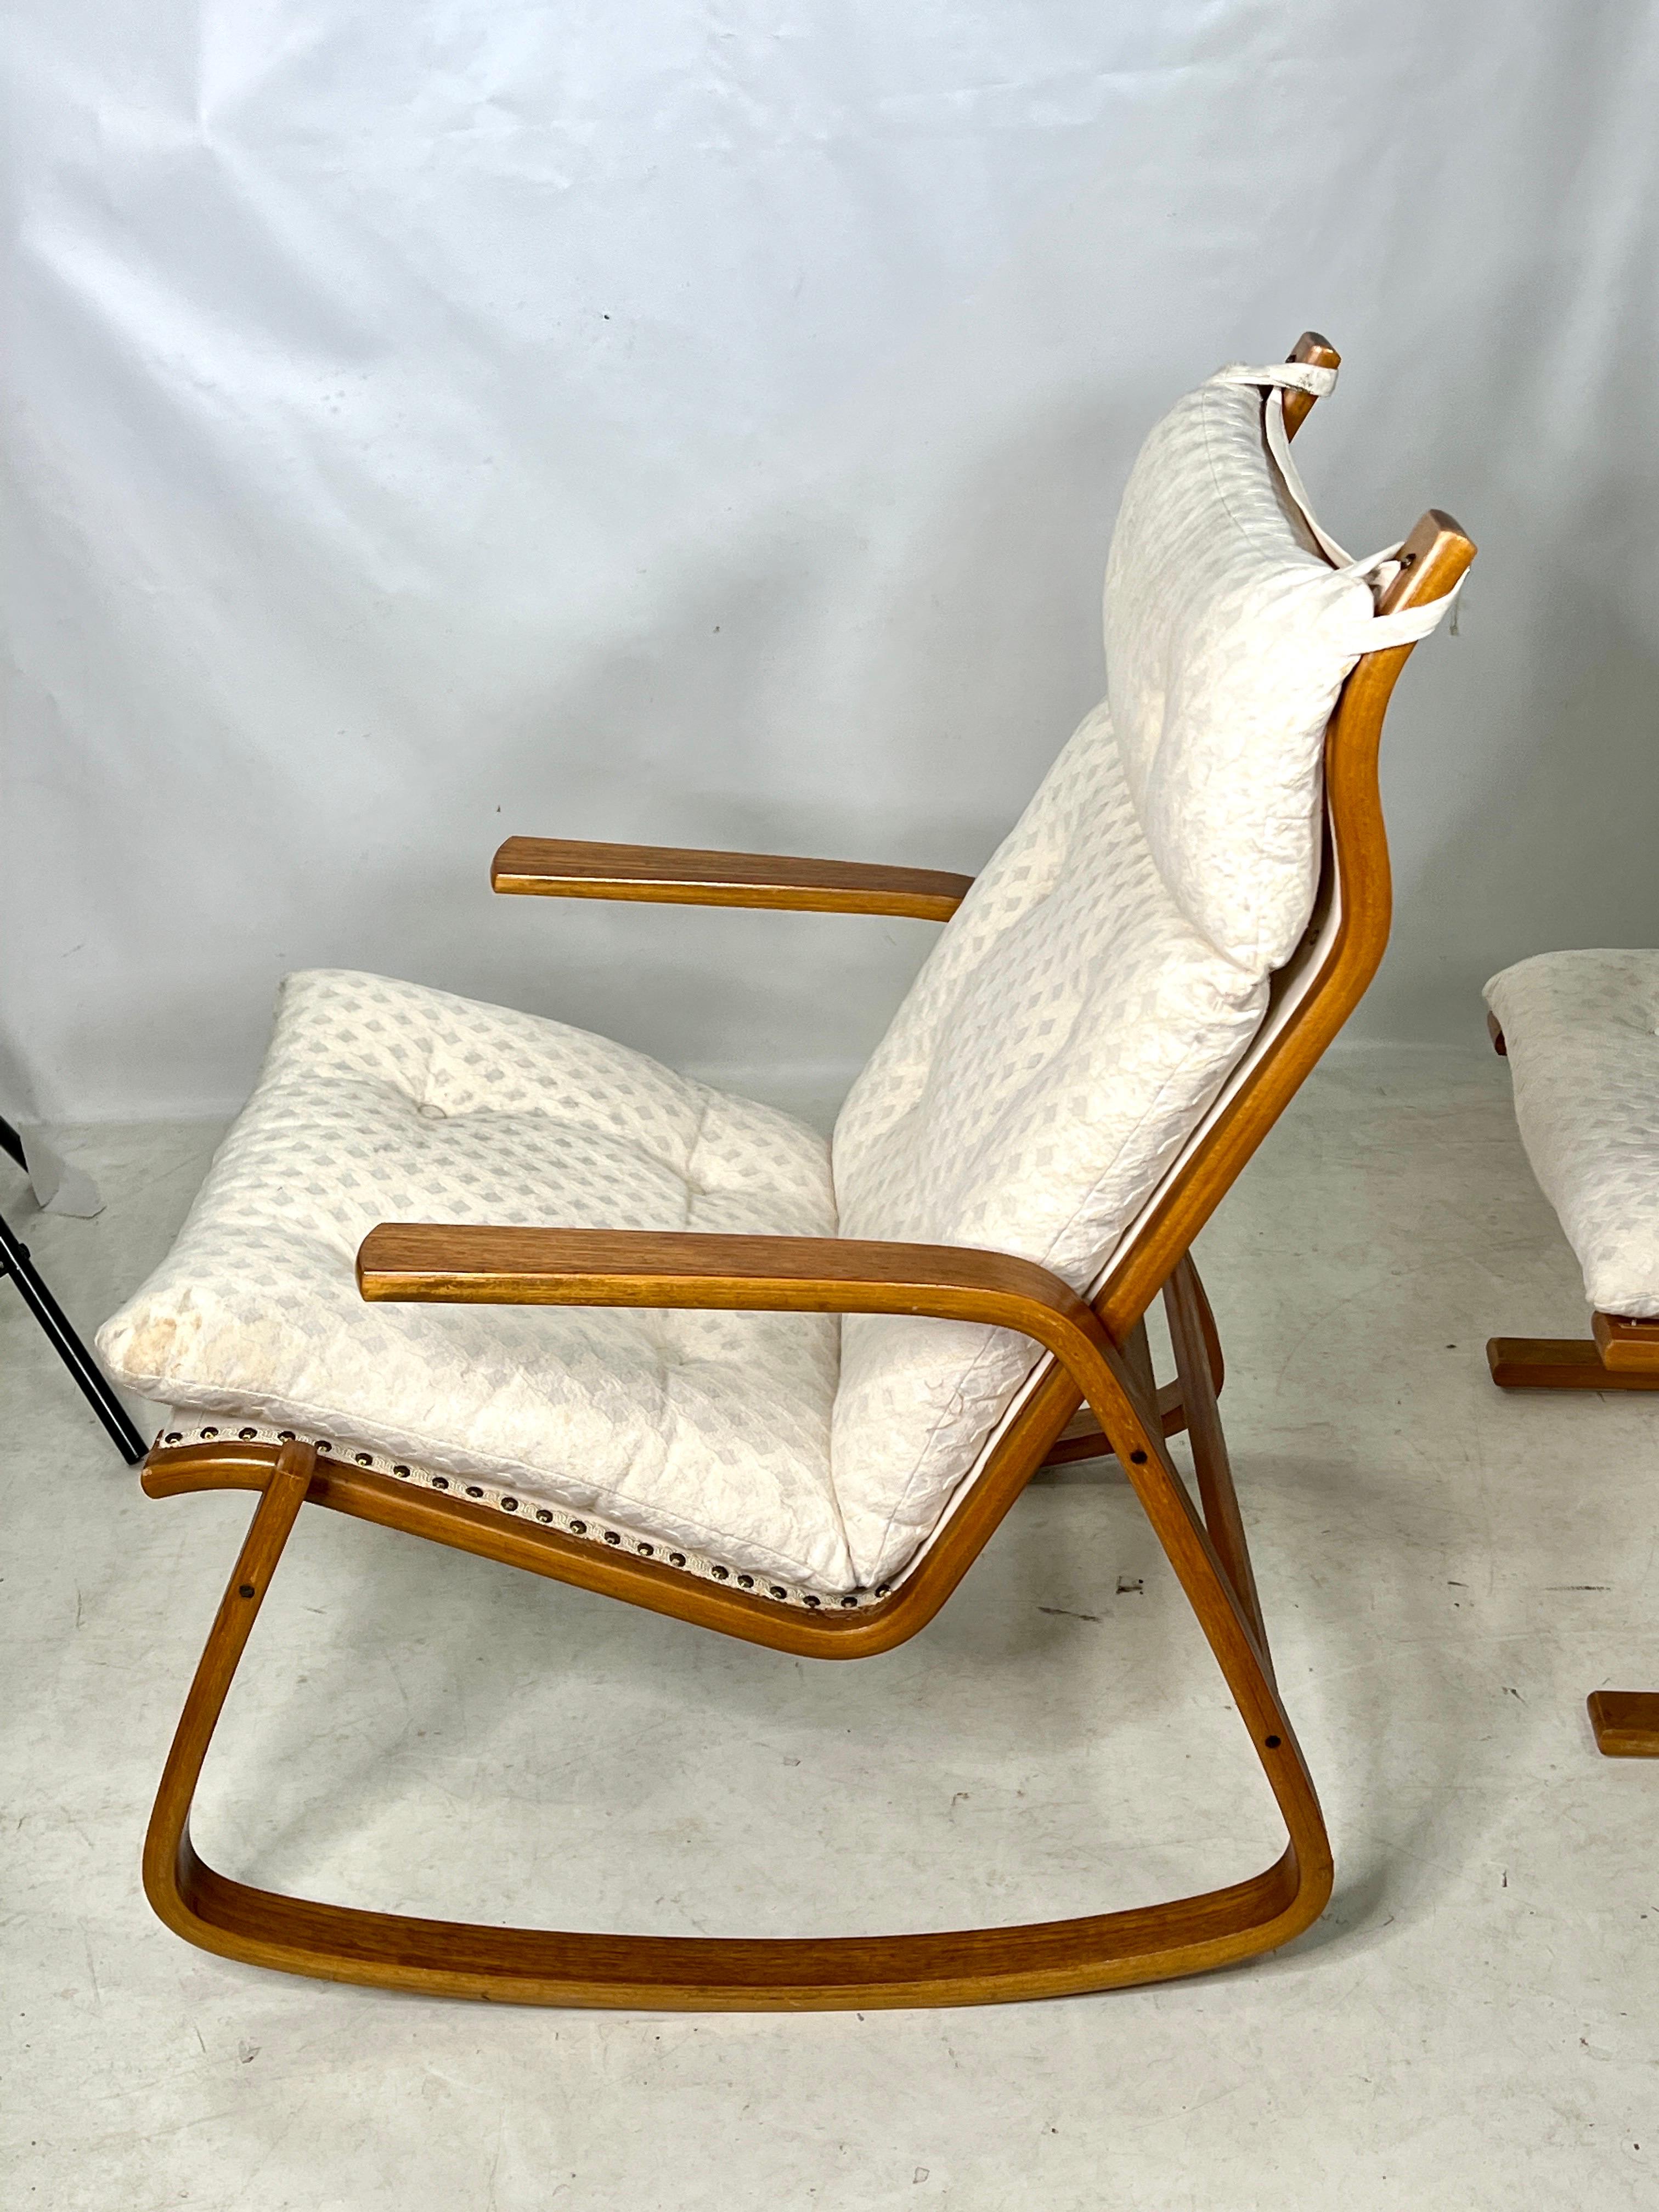 Nous vous présentons une exquise chaise à bascule vintage en bois courbé avec ottoman, d'une beauté intemporelle. Cette chaise ne se contente pas d'afficher un design séduisant, elle offre également un confort exceptionnel et une silhouette